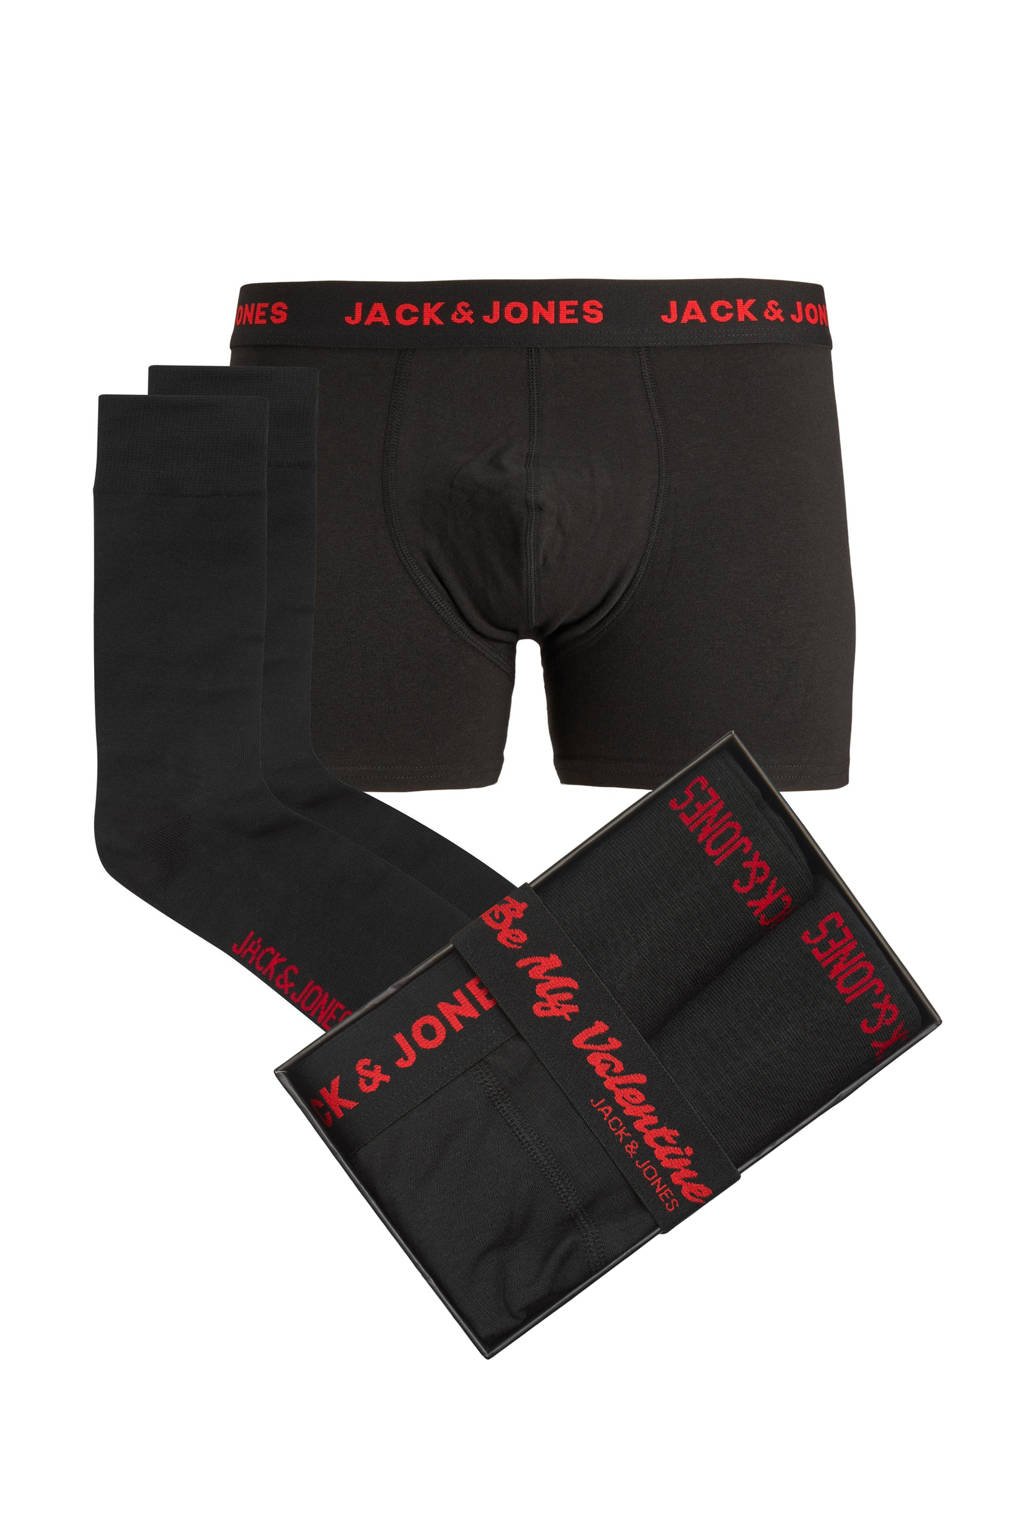 hoofdstad Richtlijnen abstract JACK & JONES giftbox boxershort + 1 paar sokken JACVALENTINE Valentijn |  wehkamp